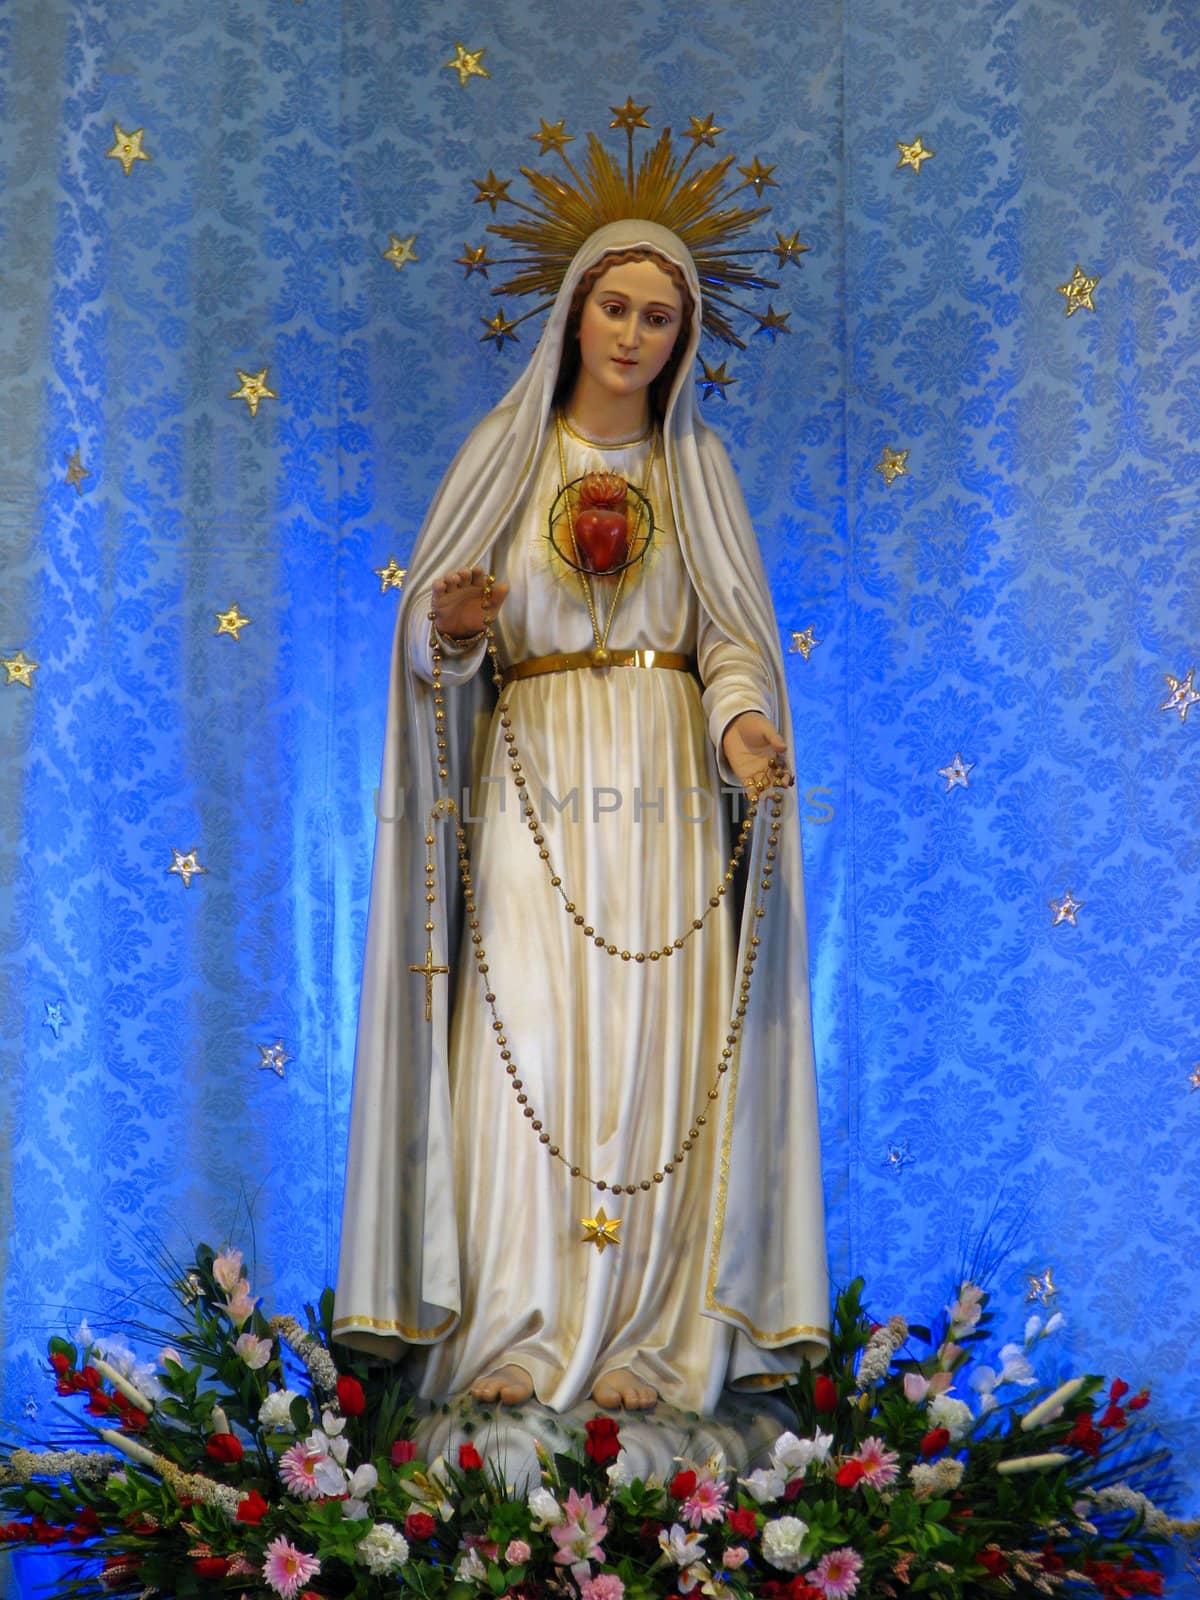 Our Lady of Fatima by fajjenzu